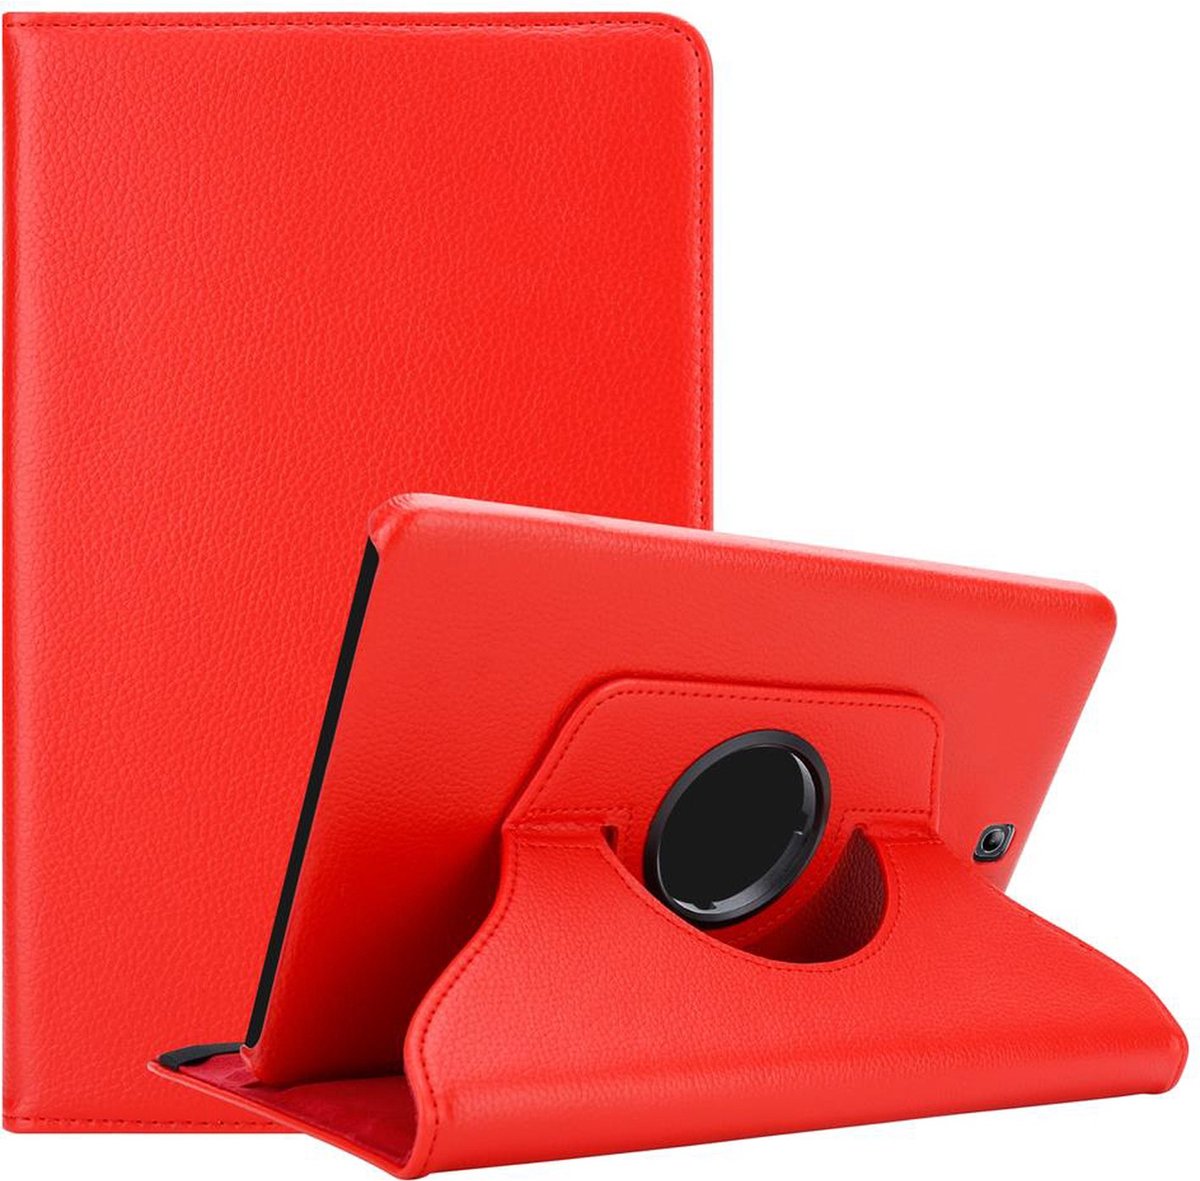 Cadorabo Tablet Hoesje voor Samsung Galaxy Tab S2 (8 inch) in KLAPROOS ROOD - Beschermhoes ZONDER auto Wake Up, met stand functie en elastische band sluiting Book Case Cover Etui